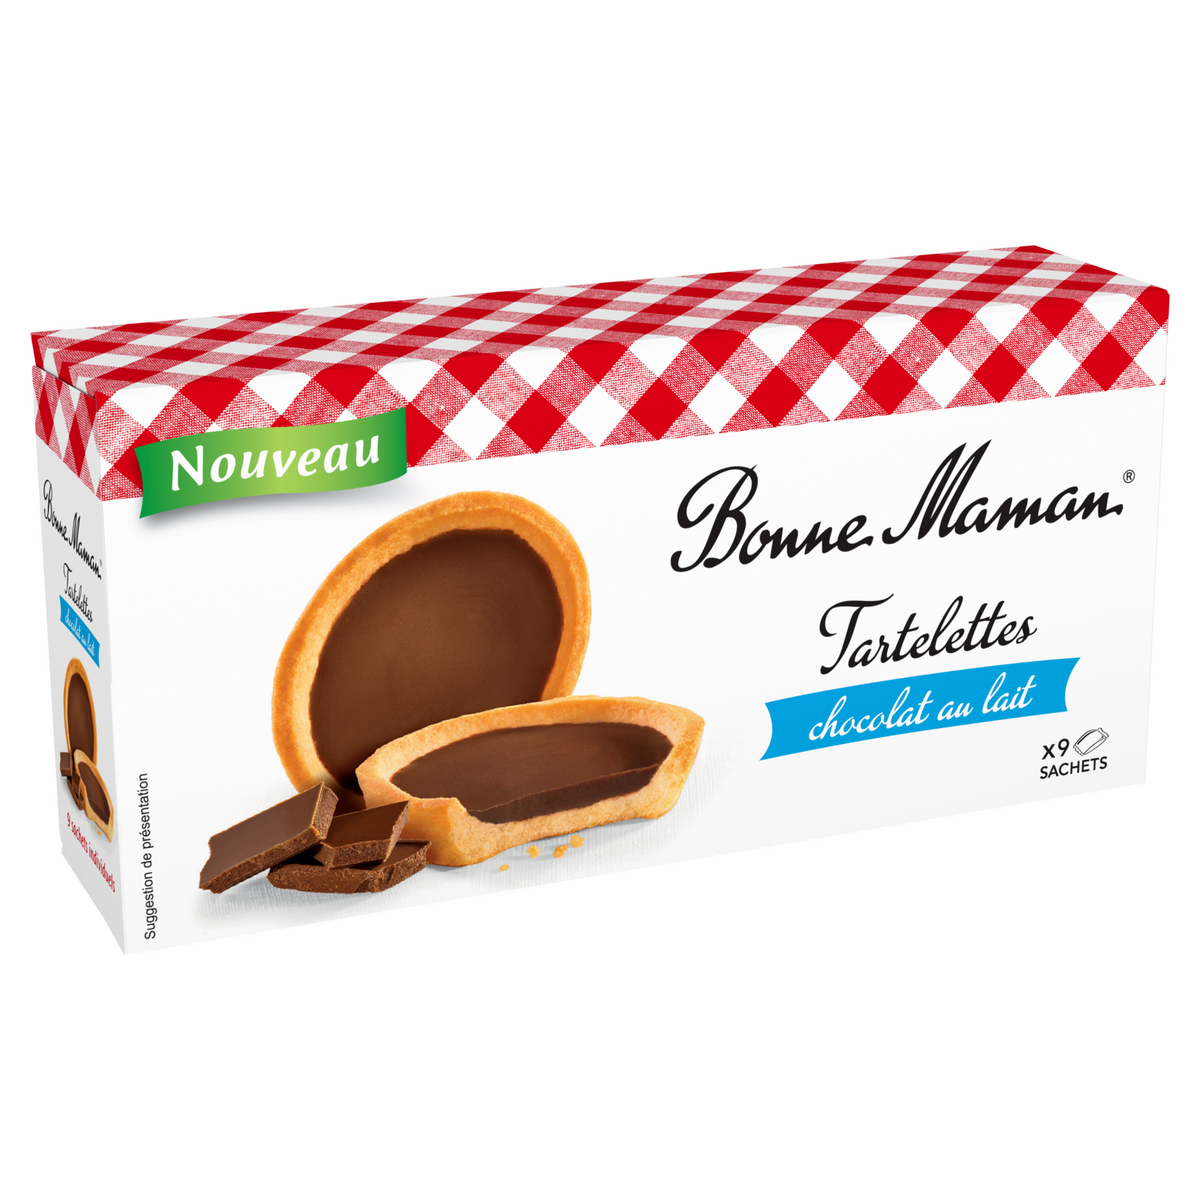 BONNE MAMAN Biscuits tartelettes au chocolat au lait sachets individuels 9 sachets 125g